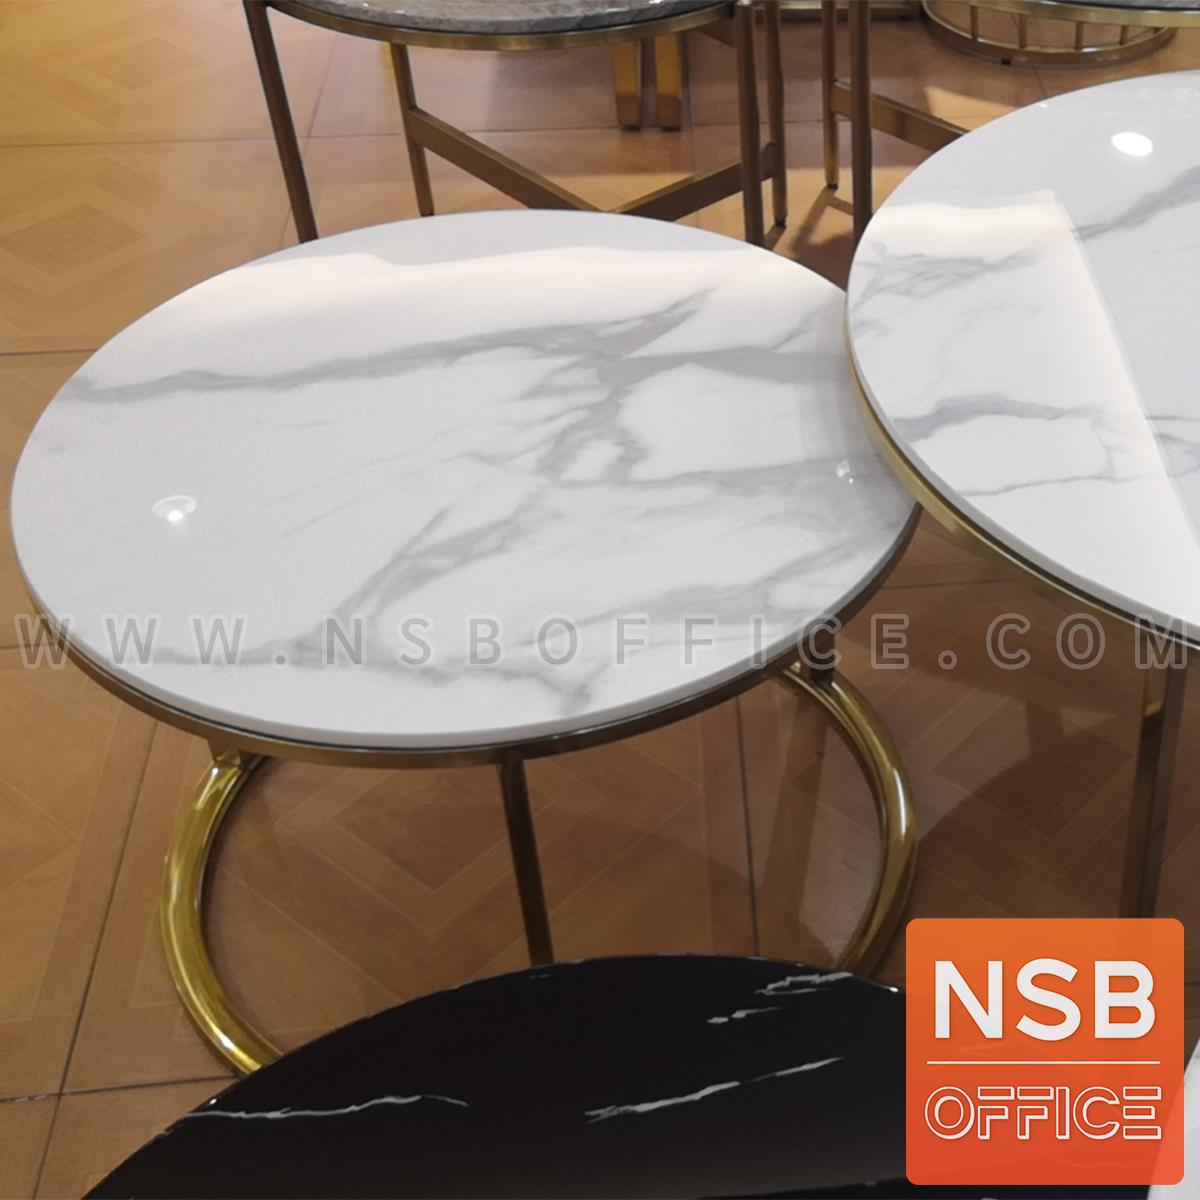 โต๊ะกลางหินอ่อนสีขาว รุ่น Lightfine (ไลท์ไฟน์)   ขาสแตนเลสชุบทอง